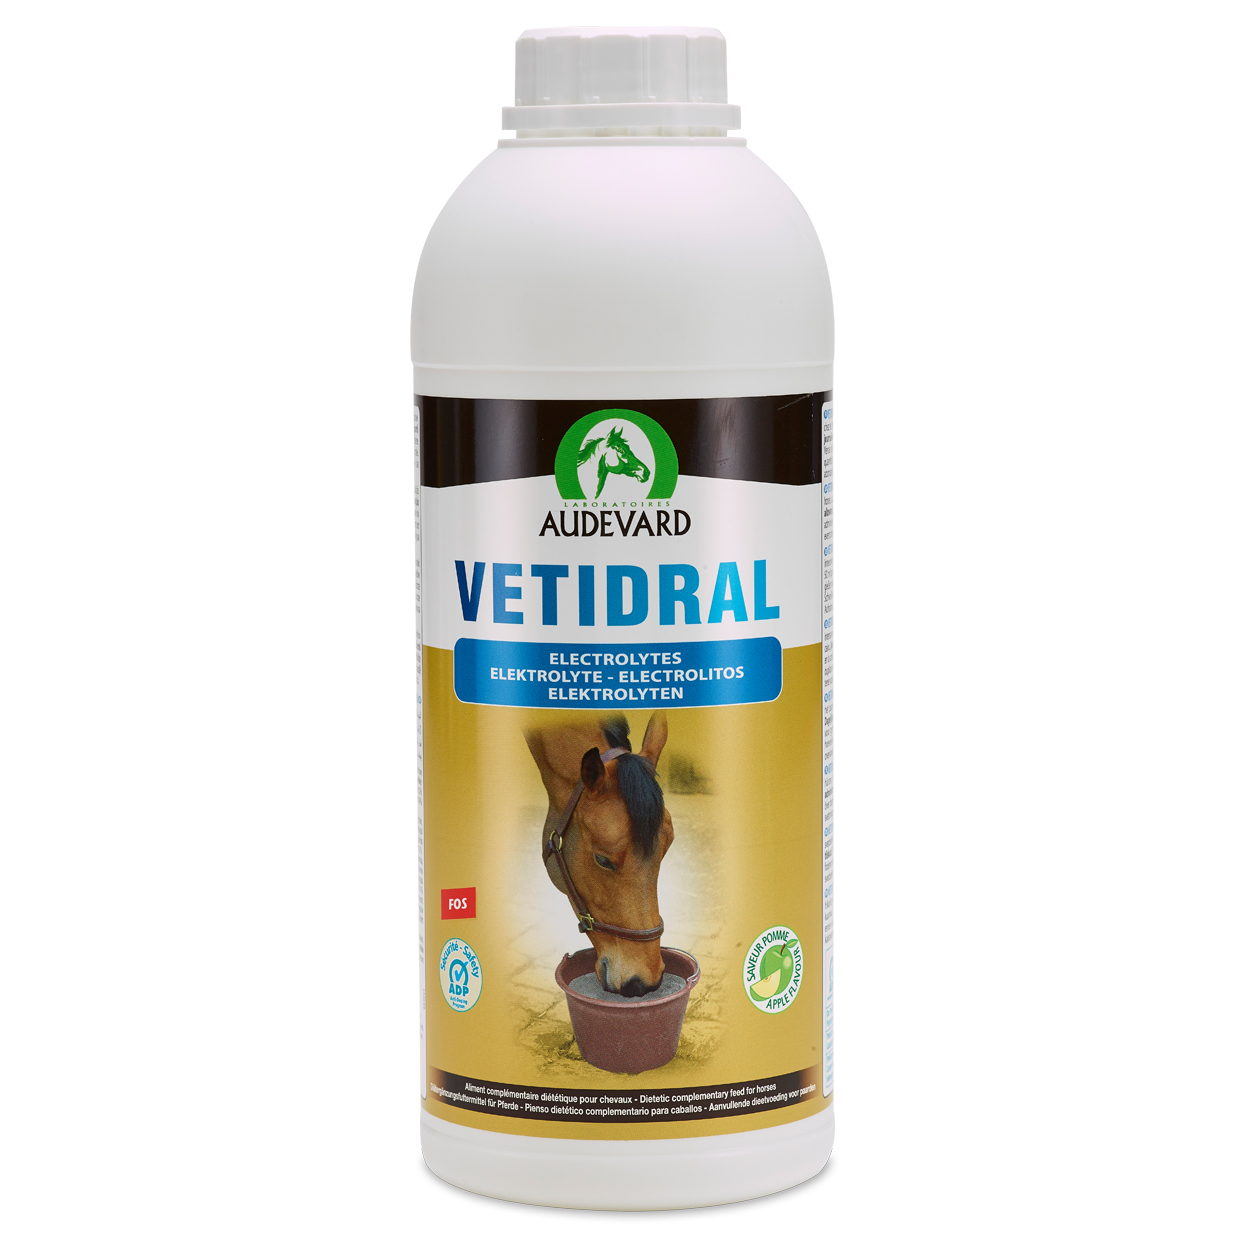 Audevard Vetidral Solution für das schwitzende Pferd Elektrolyte